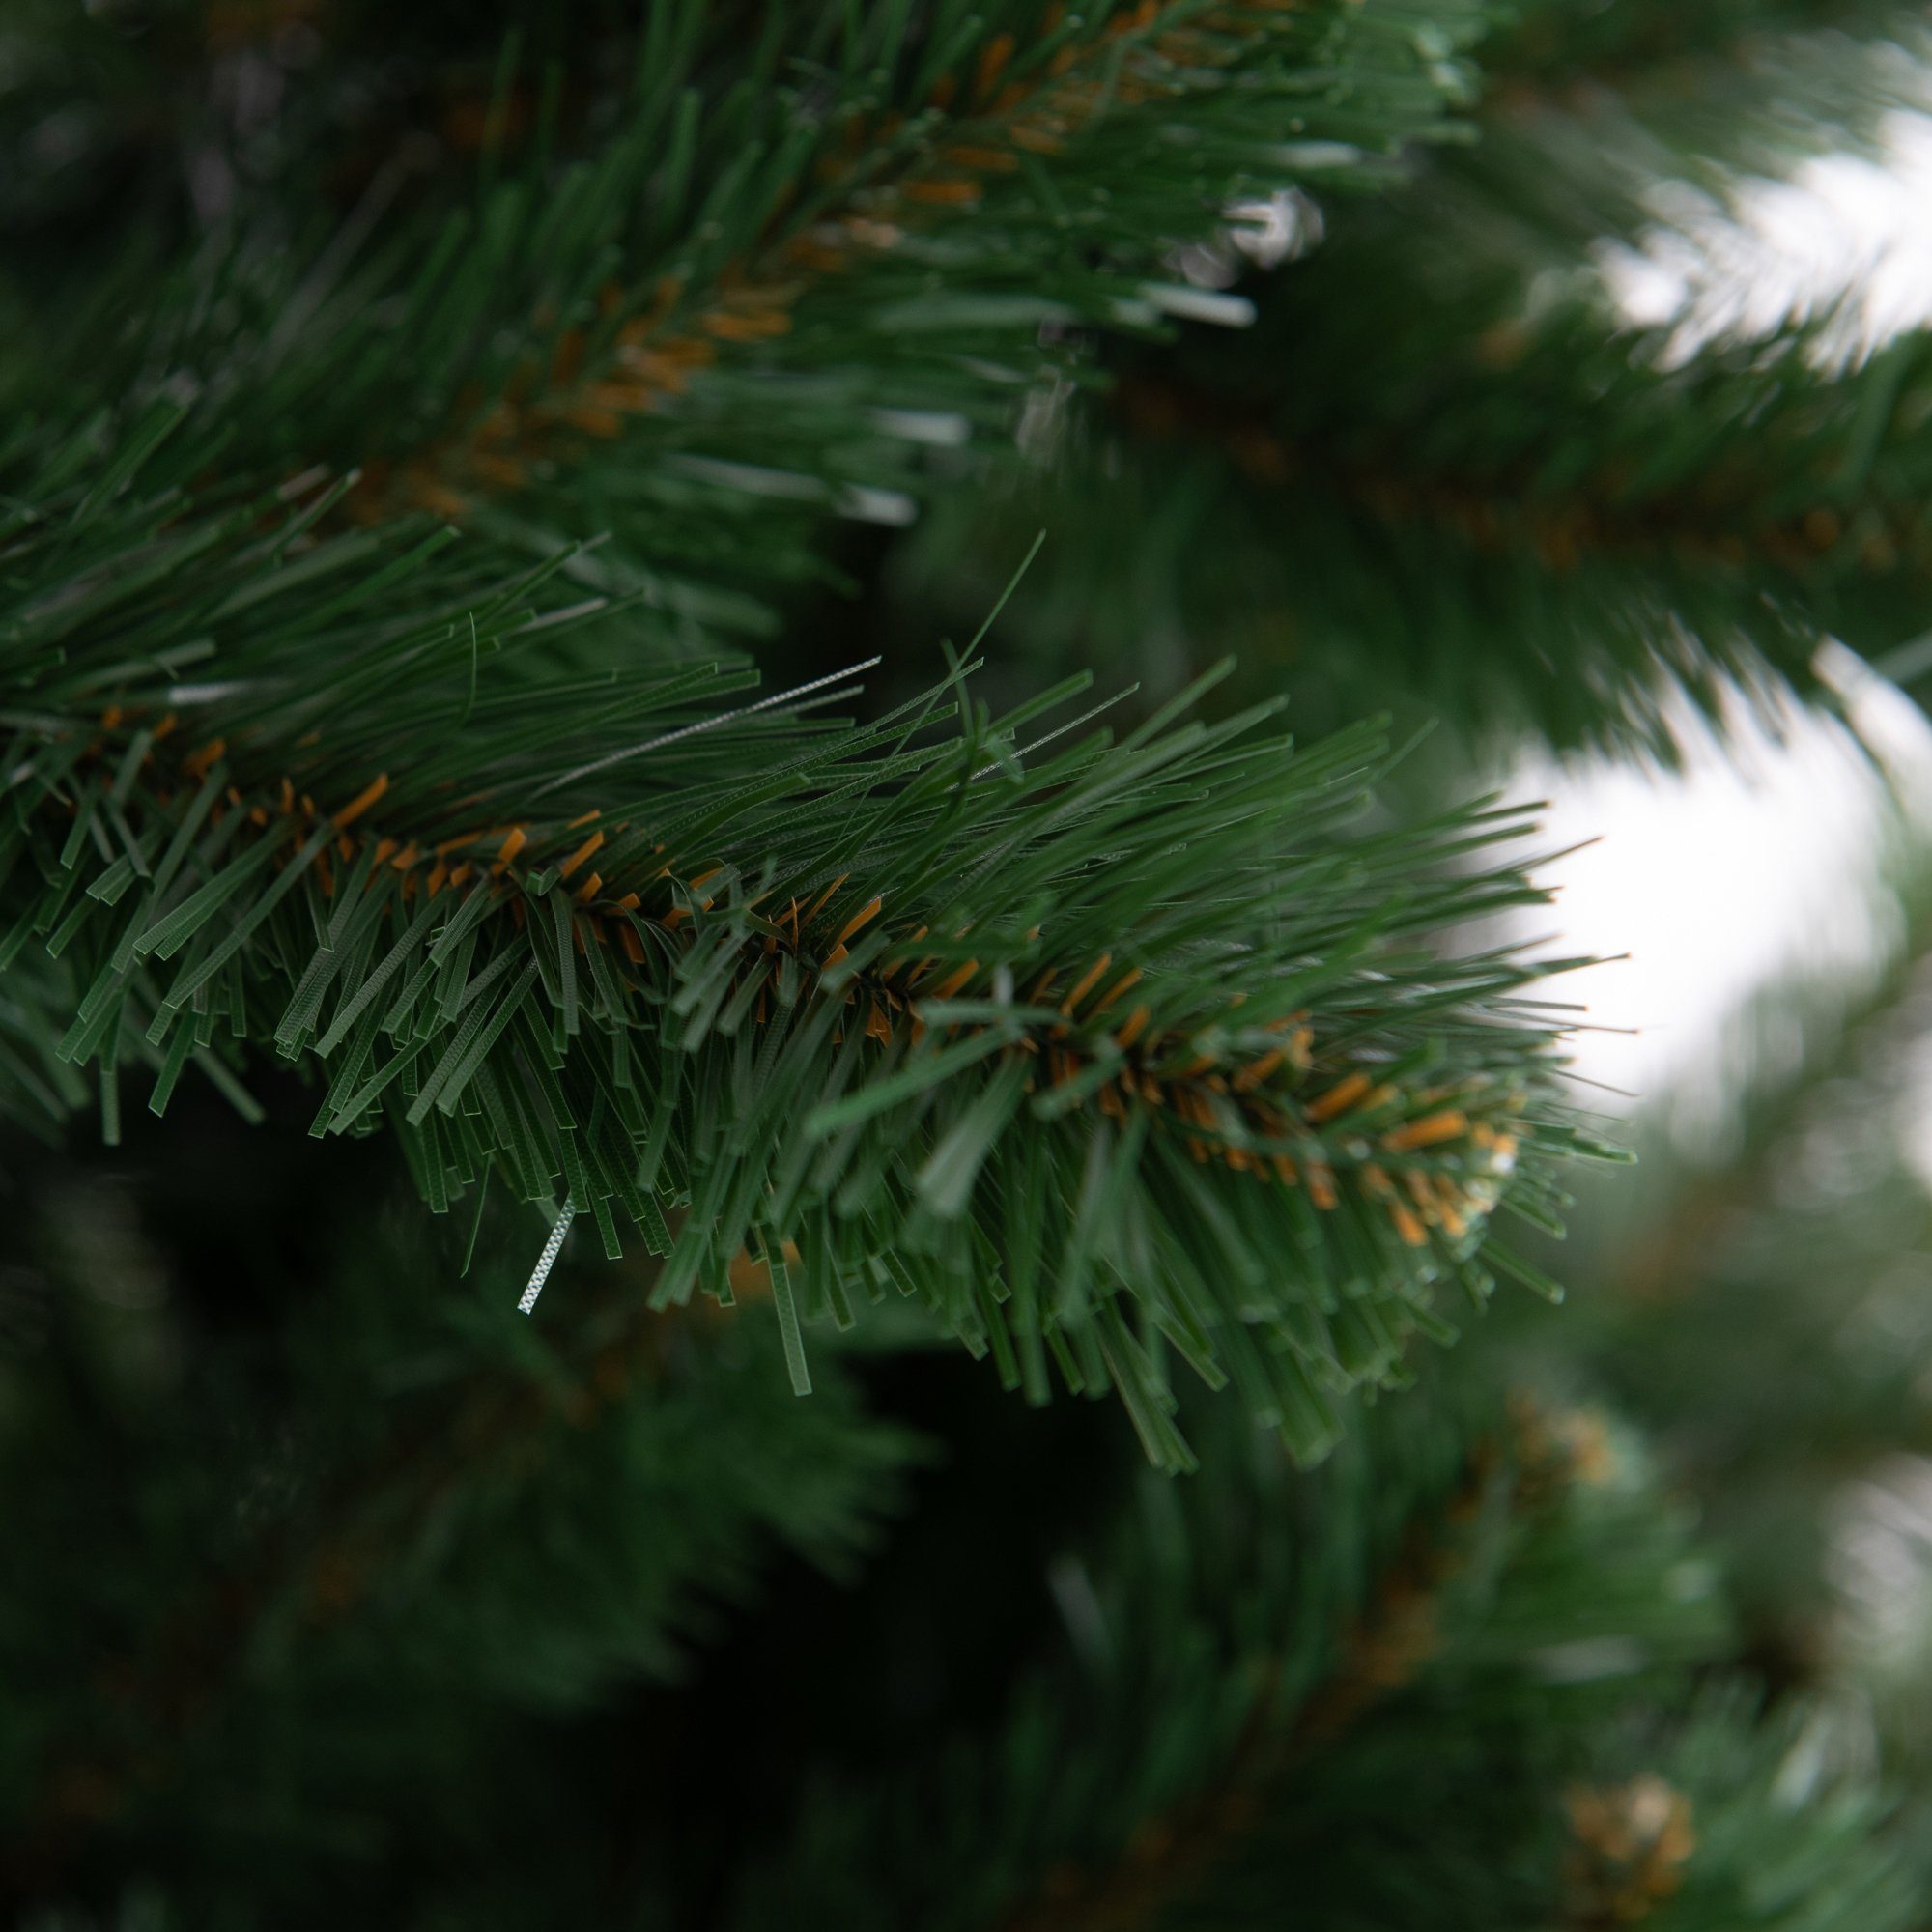 Künstliches Künstlicher Weihnachtsbaum Tannengrün, DekoPrinz® Borea